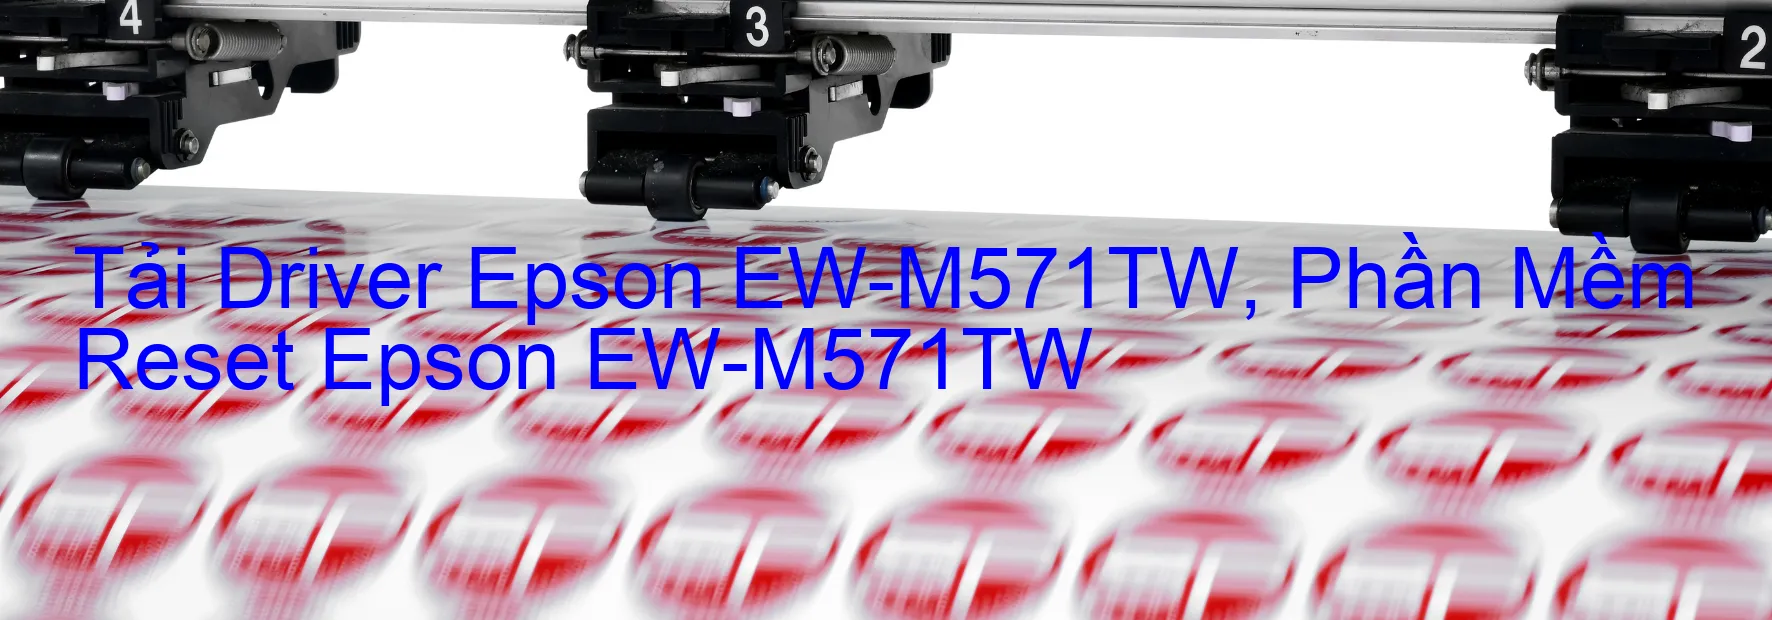 Driver Epson EW-M571TW, Phần Mềm Reset Epson EW-M571TW